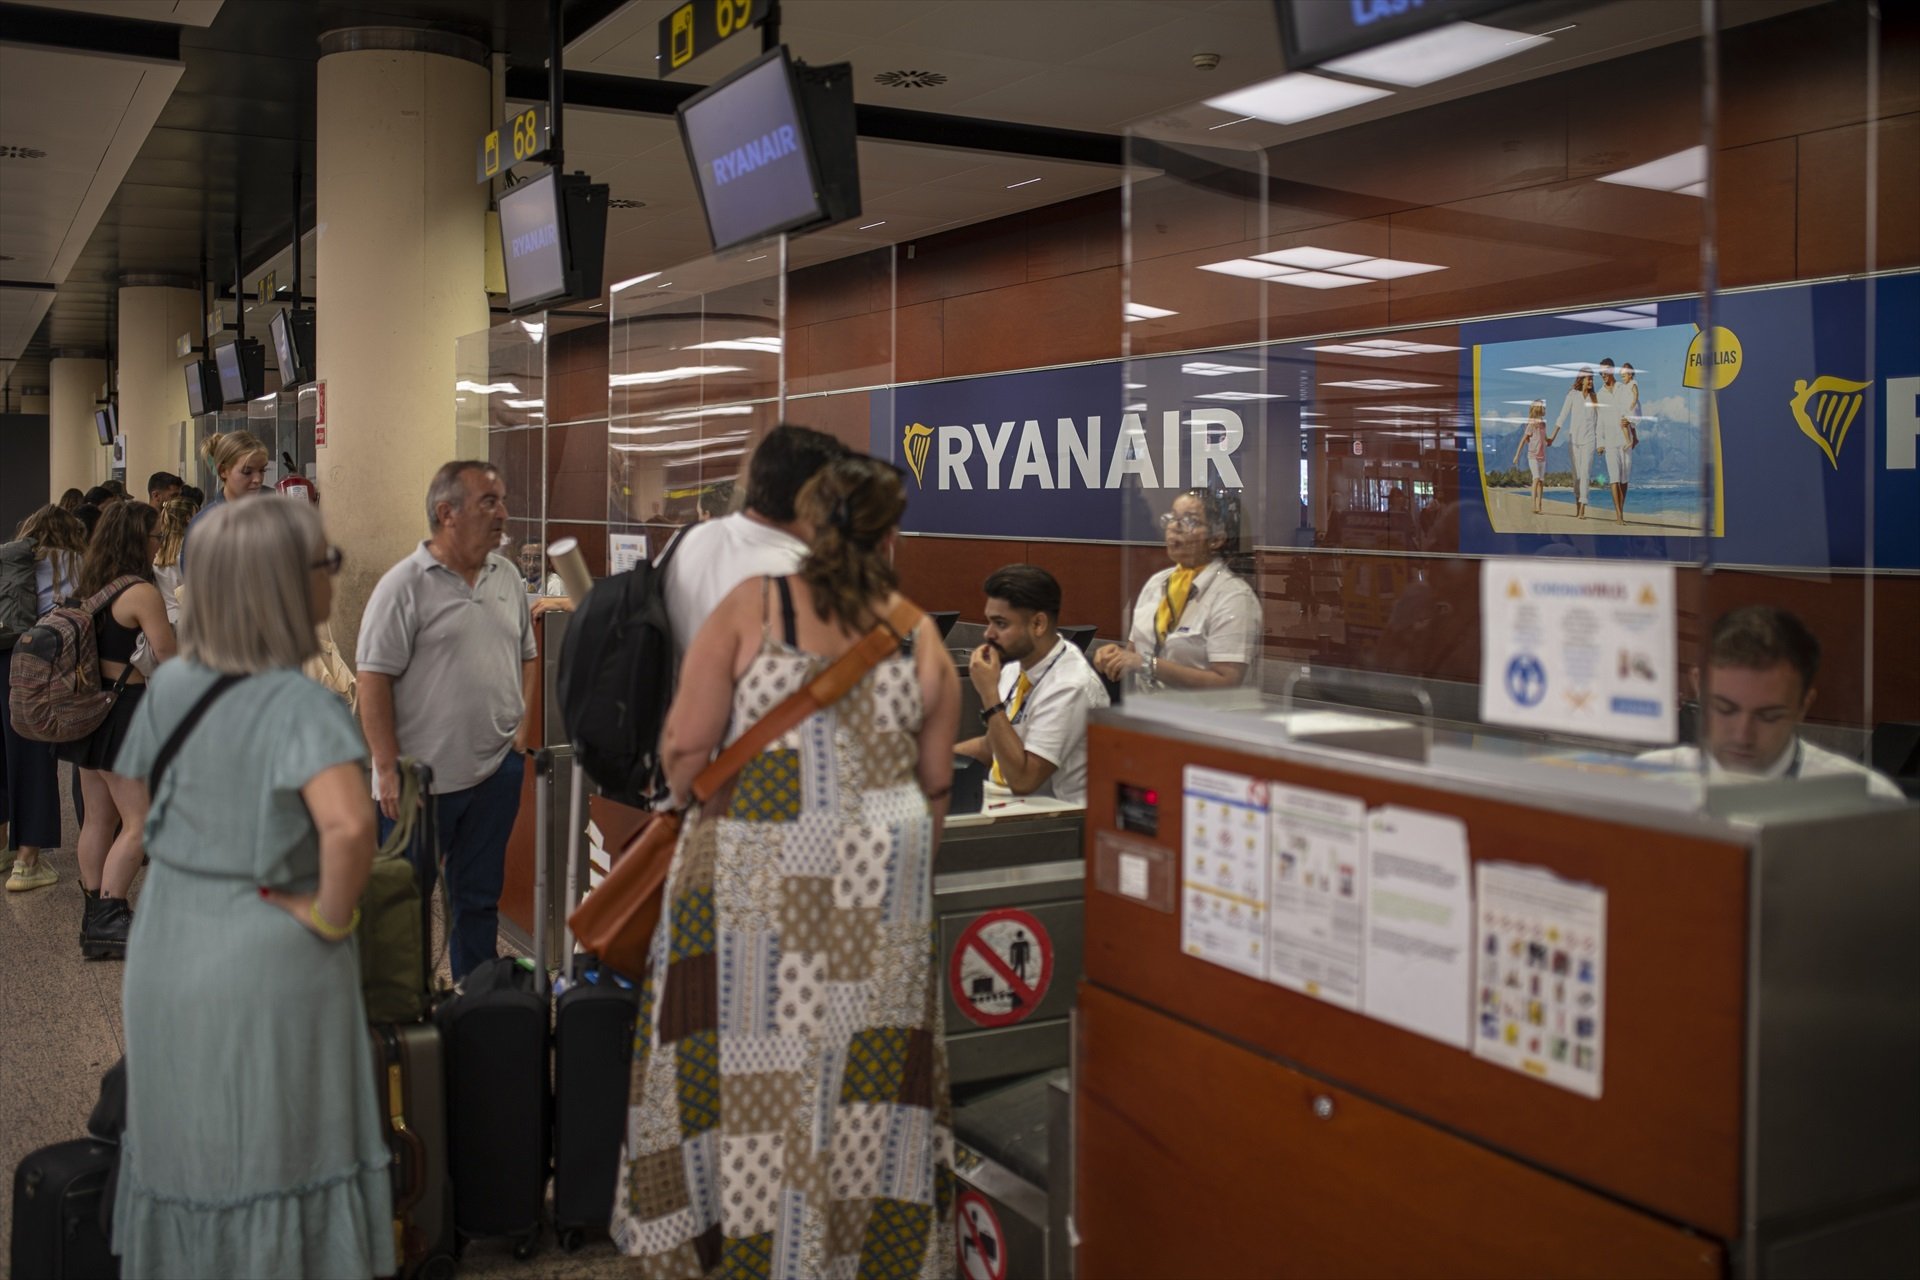 Ryanair, sancionada per Inspecció de Treball per pagar per sota de l'SMI